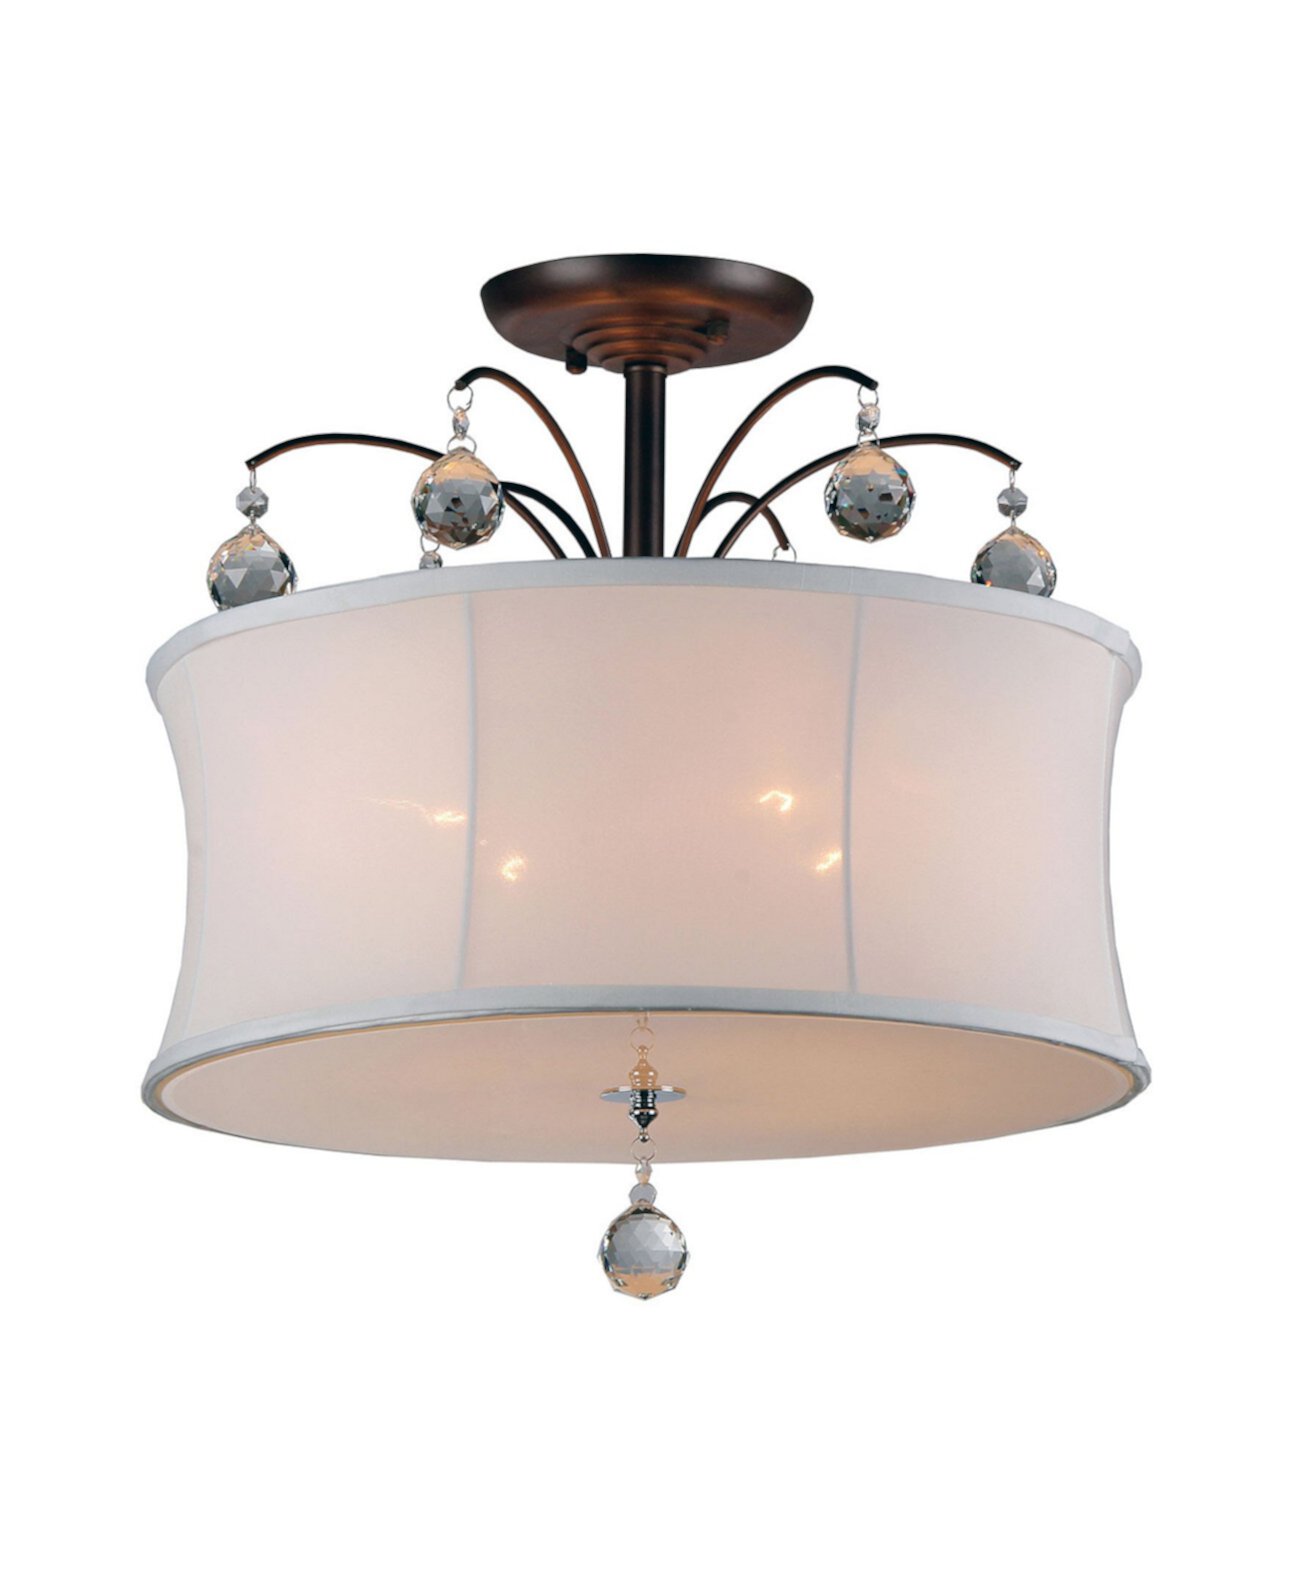 Подвесной светильник для дома с 5 лампами Olyxa, 18 дюймов, со световым комплектом Home Accessories